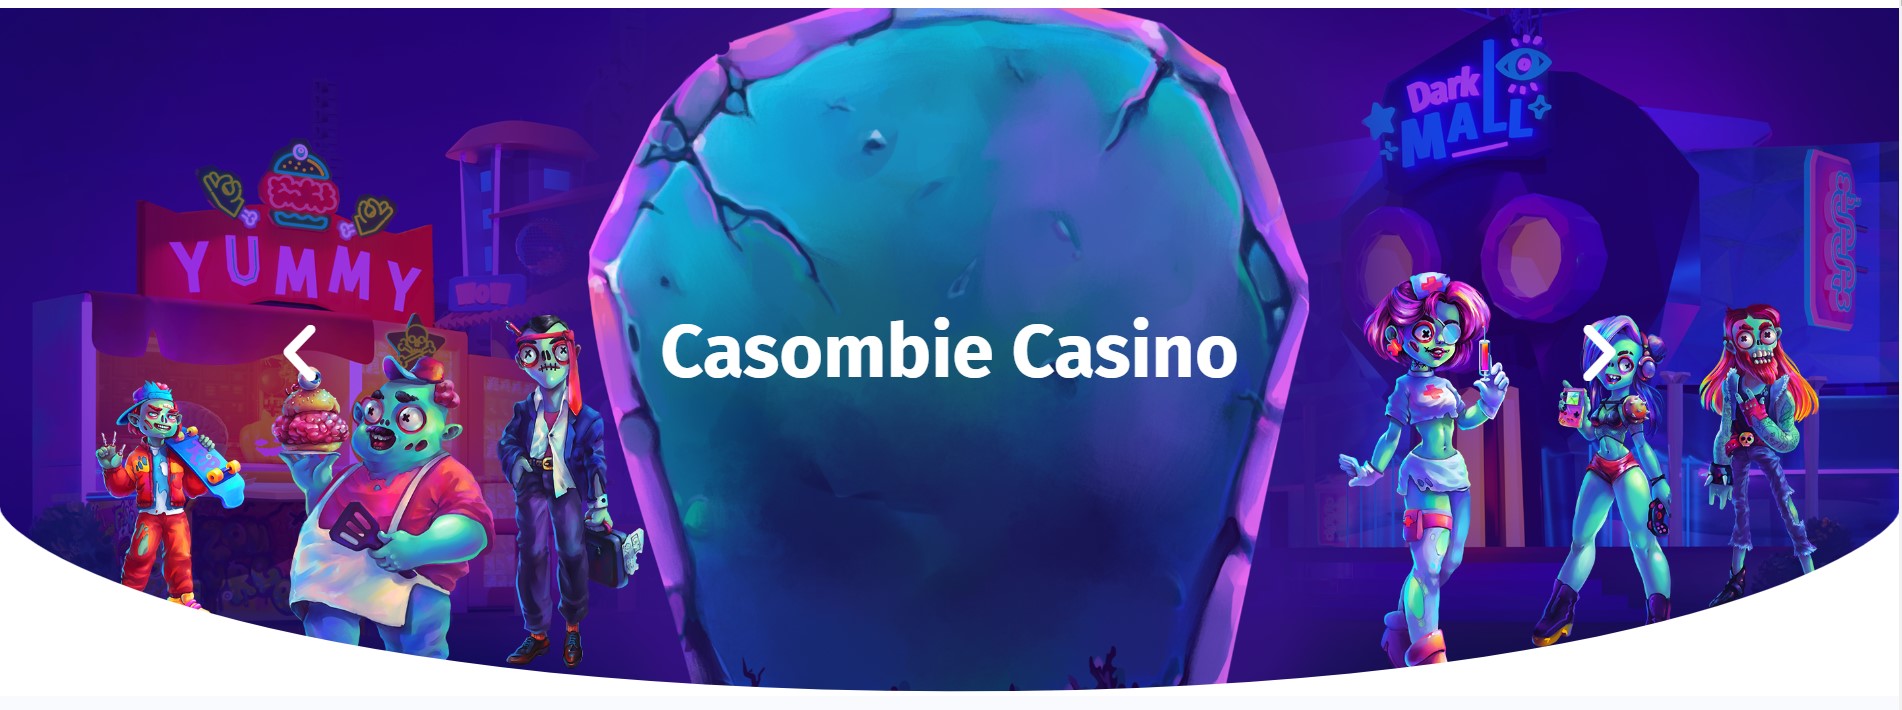 casombie casino